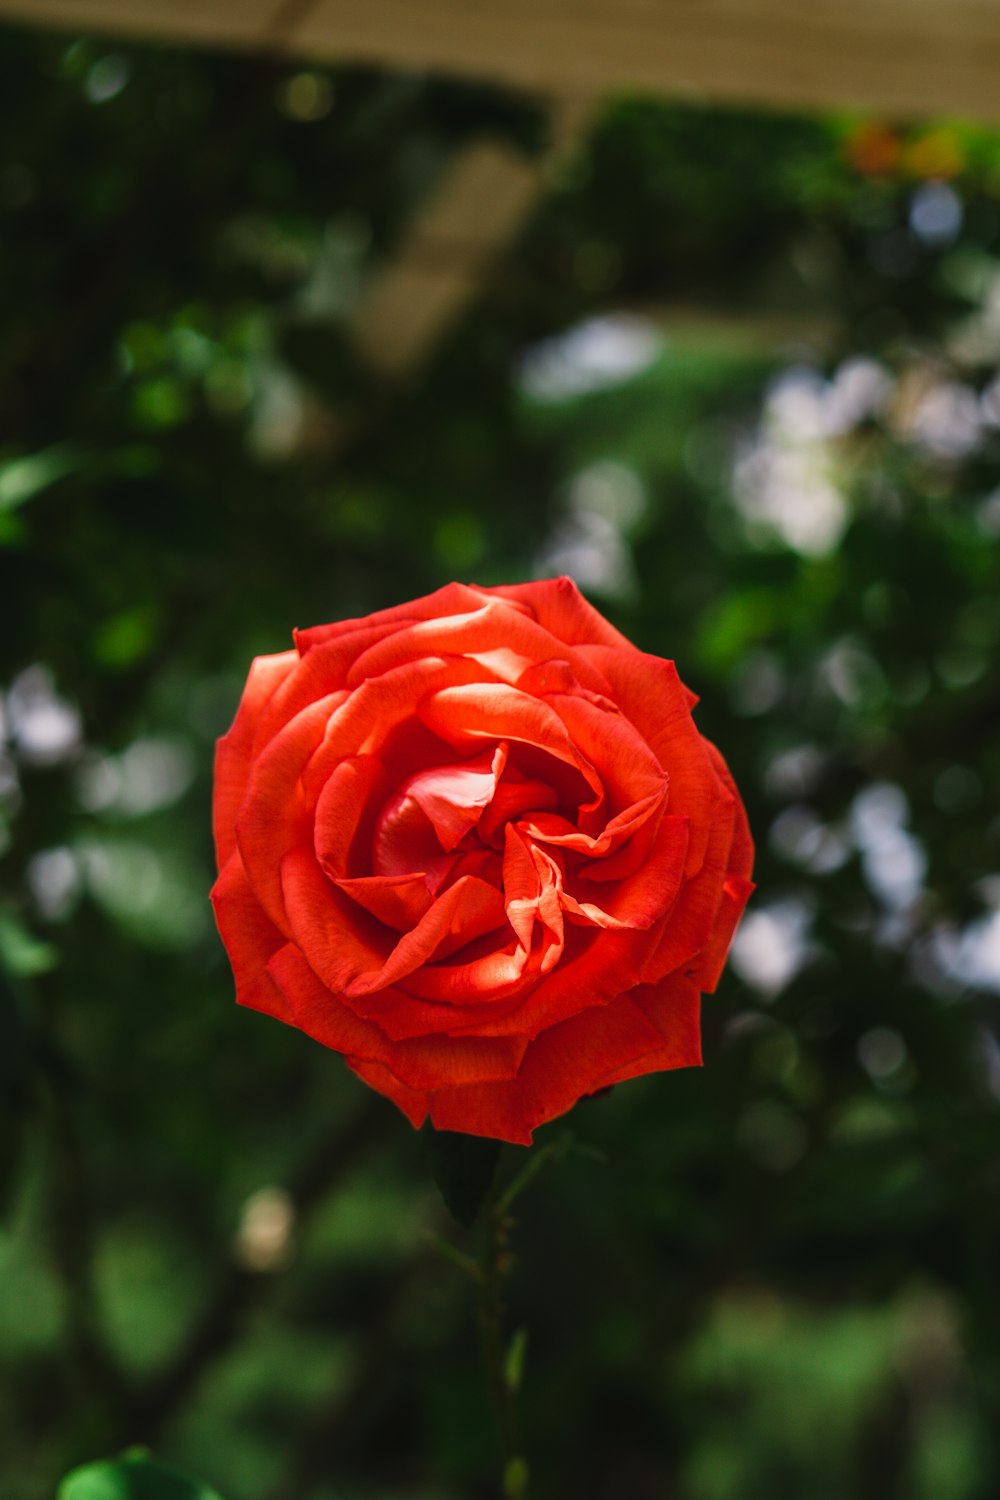 Eine rote Rose blüht in einem Garten